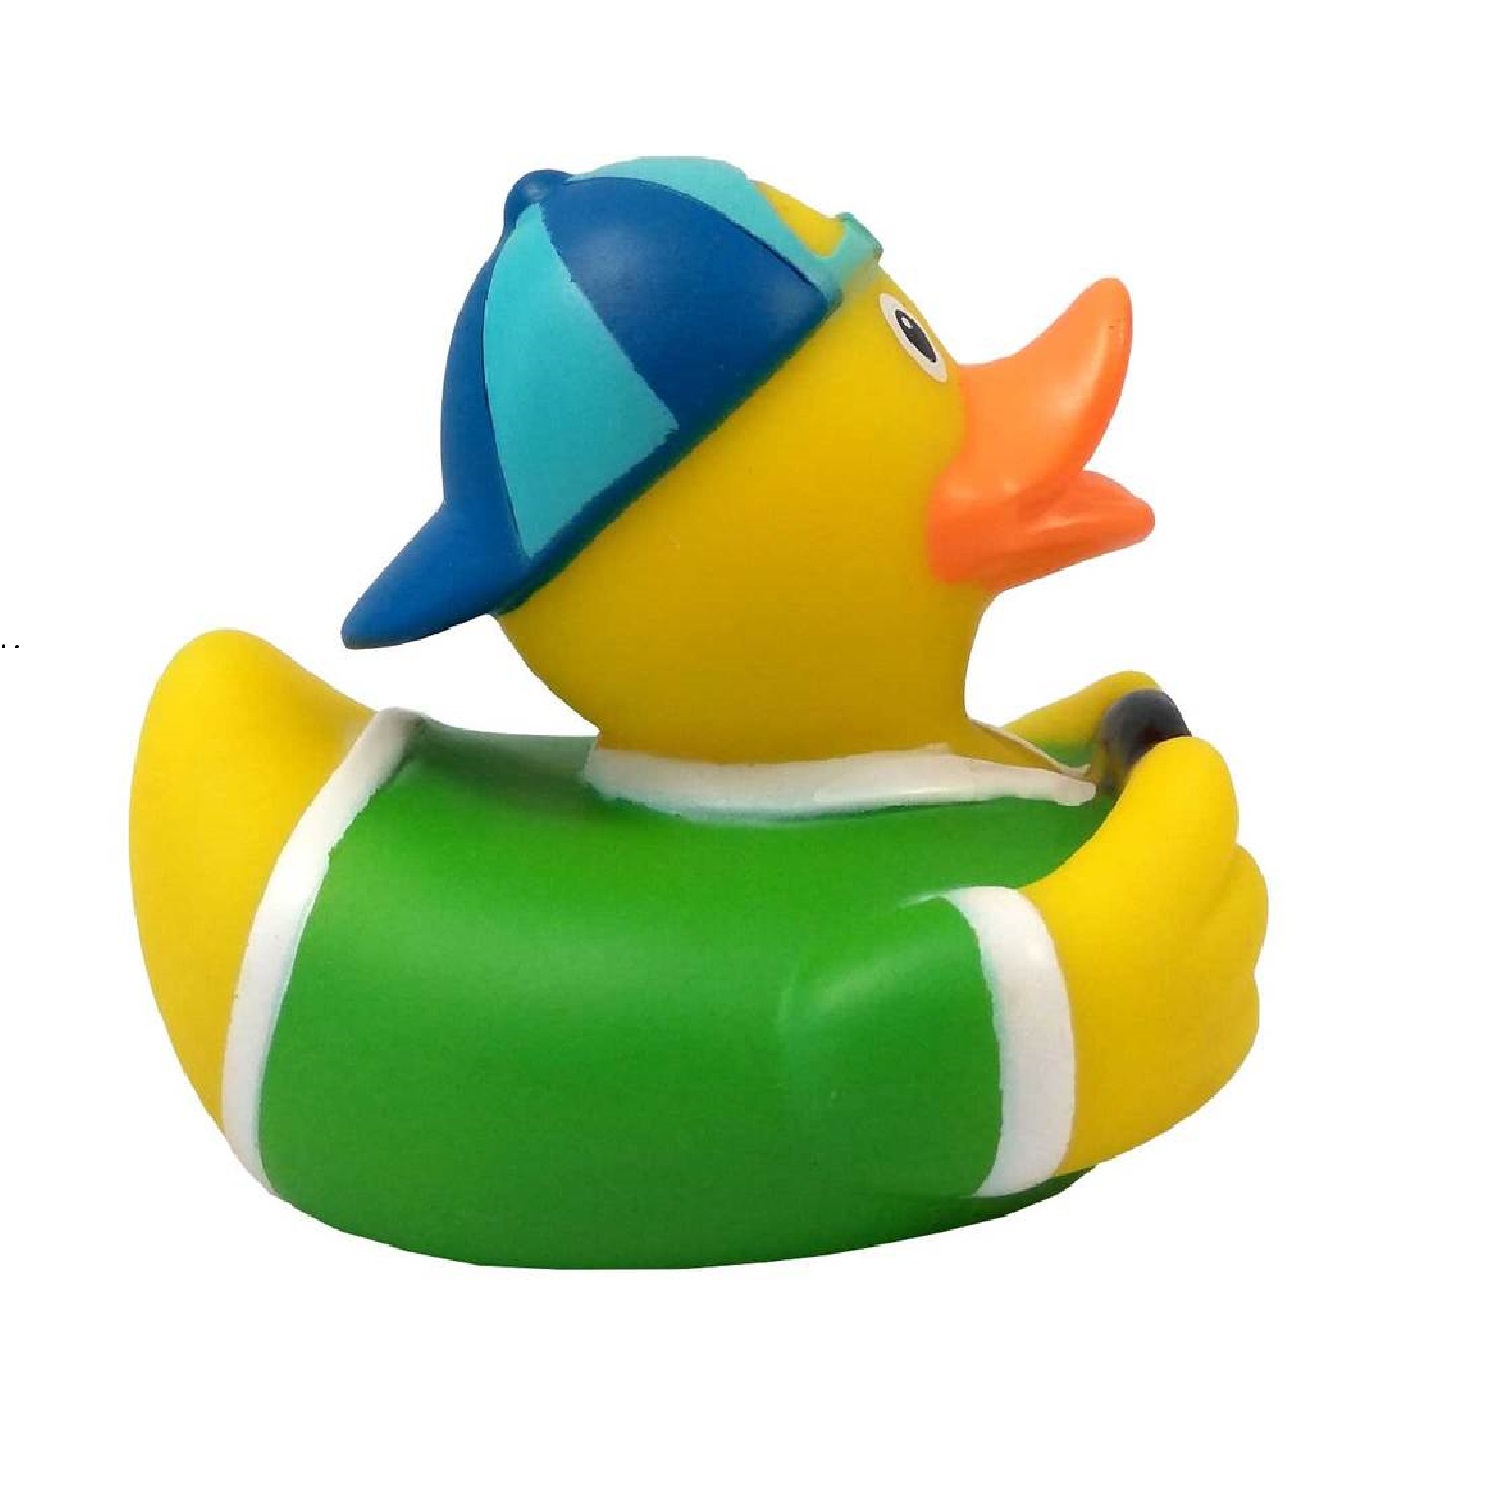 Игрушка Funny ducks для ванной Водитель уточка 1826 - фото 3